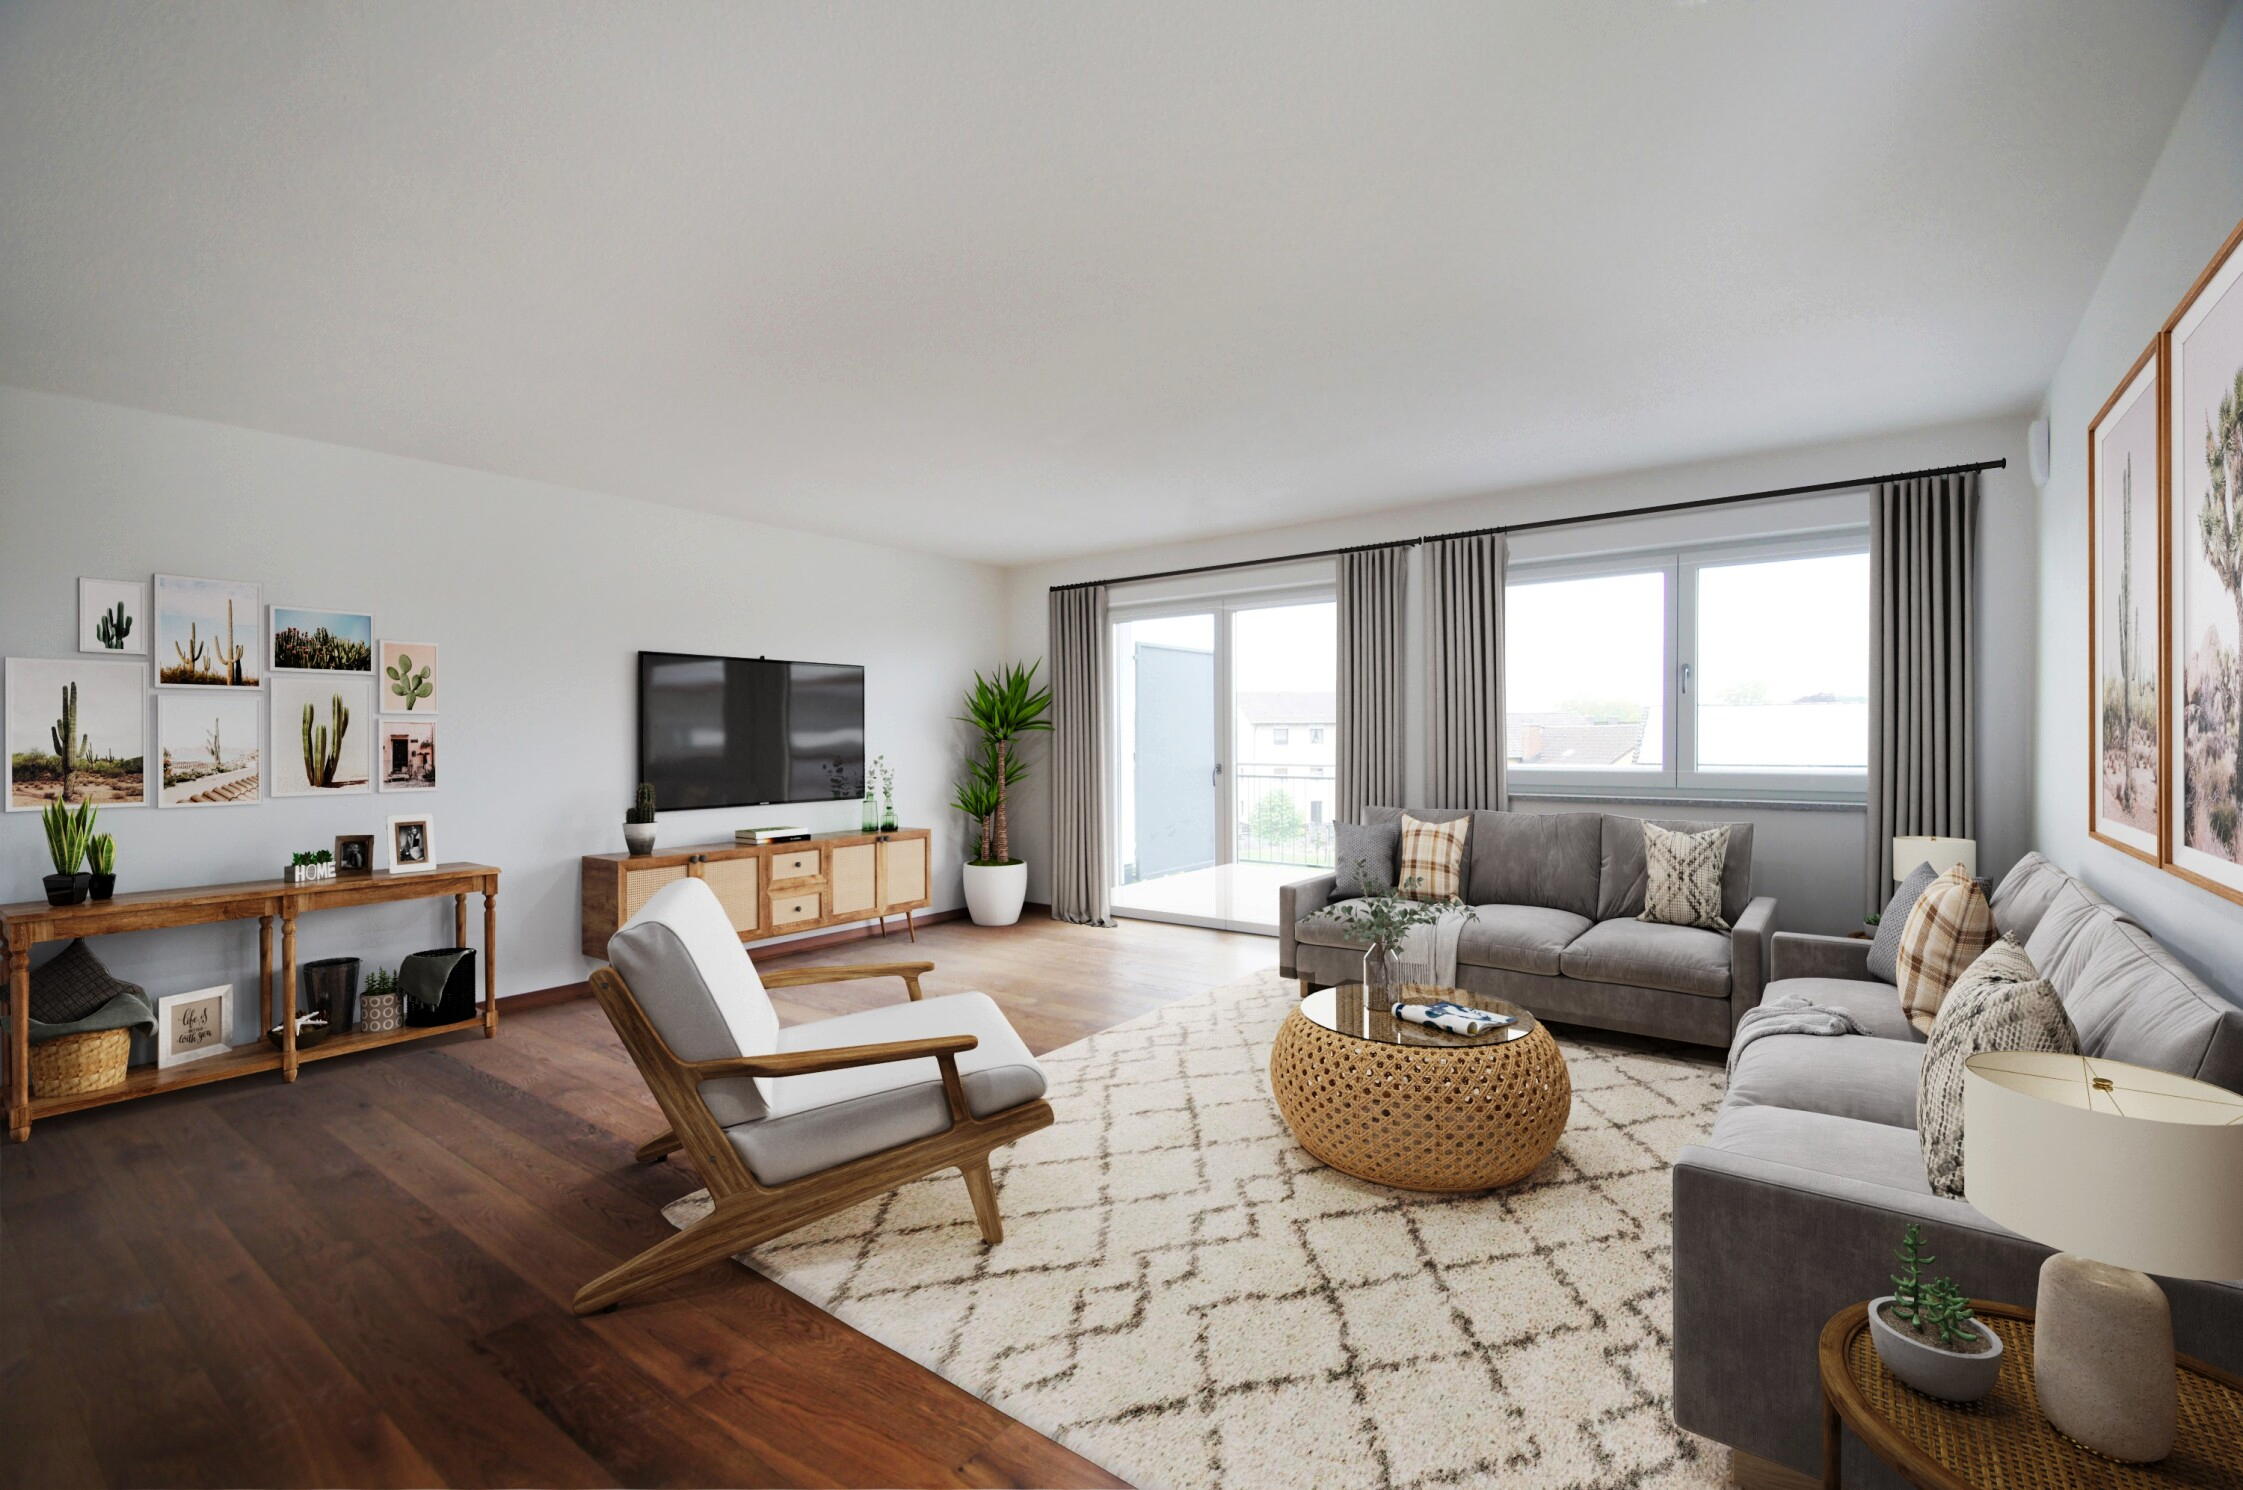 Wohnbeispiel: Lichtdurchflutetes Wohnzimmer mit Ihrer individuellen Ausstattung sorgt für ein gemütliches Ambiente.